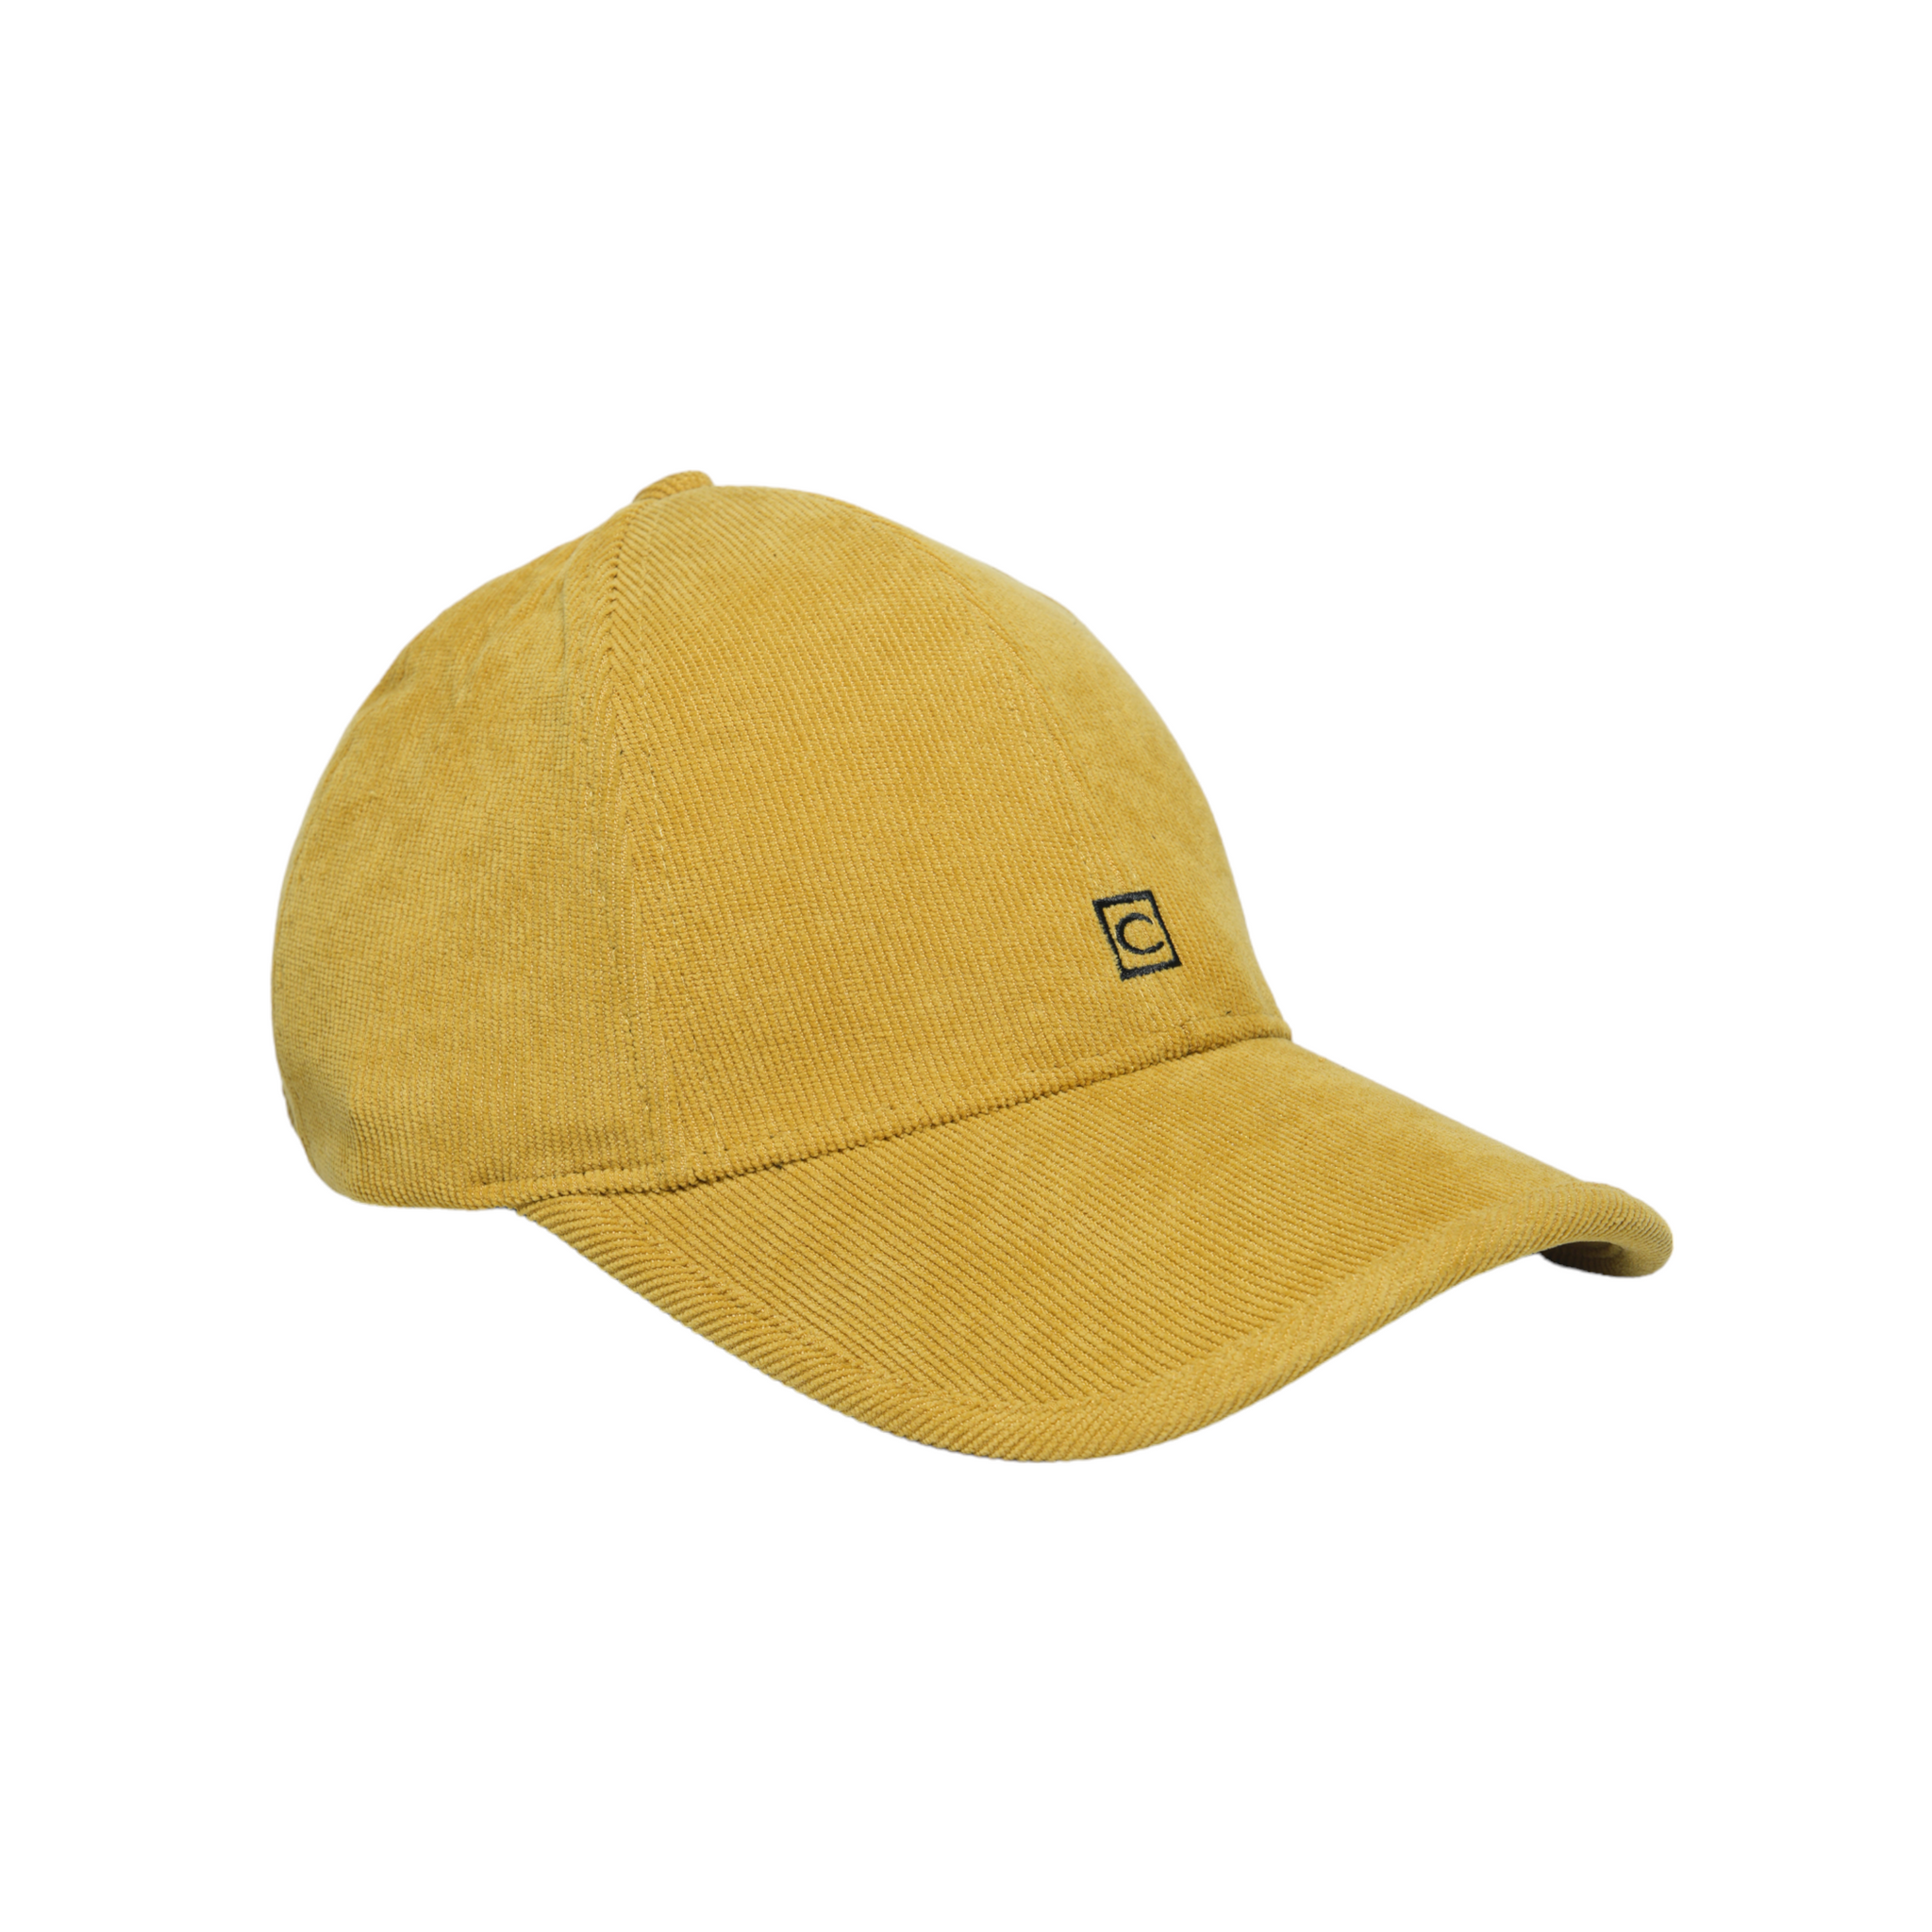 Chokore Curved Brim Autumn Baseball Cap (Yellow)